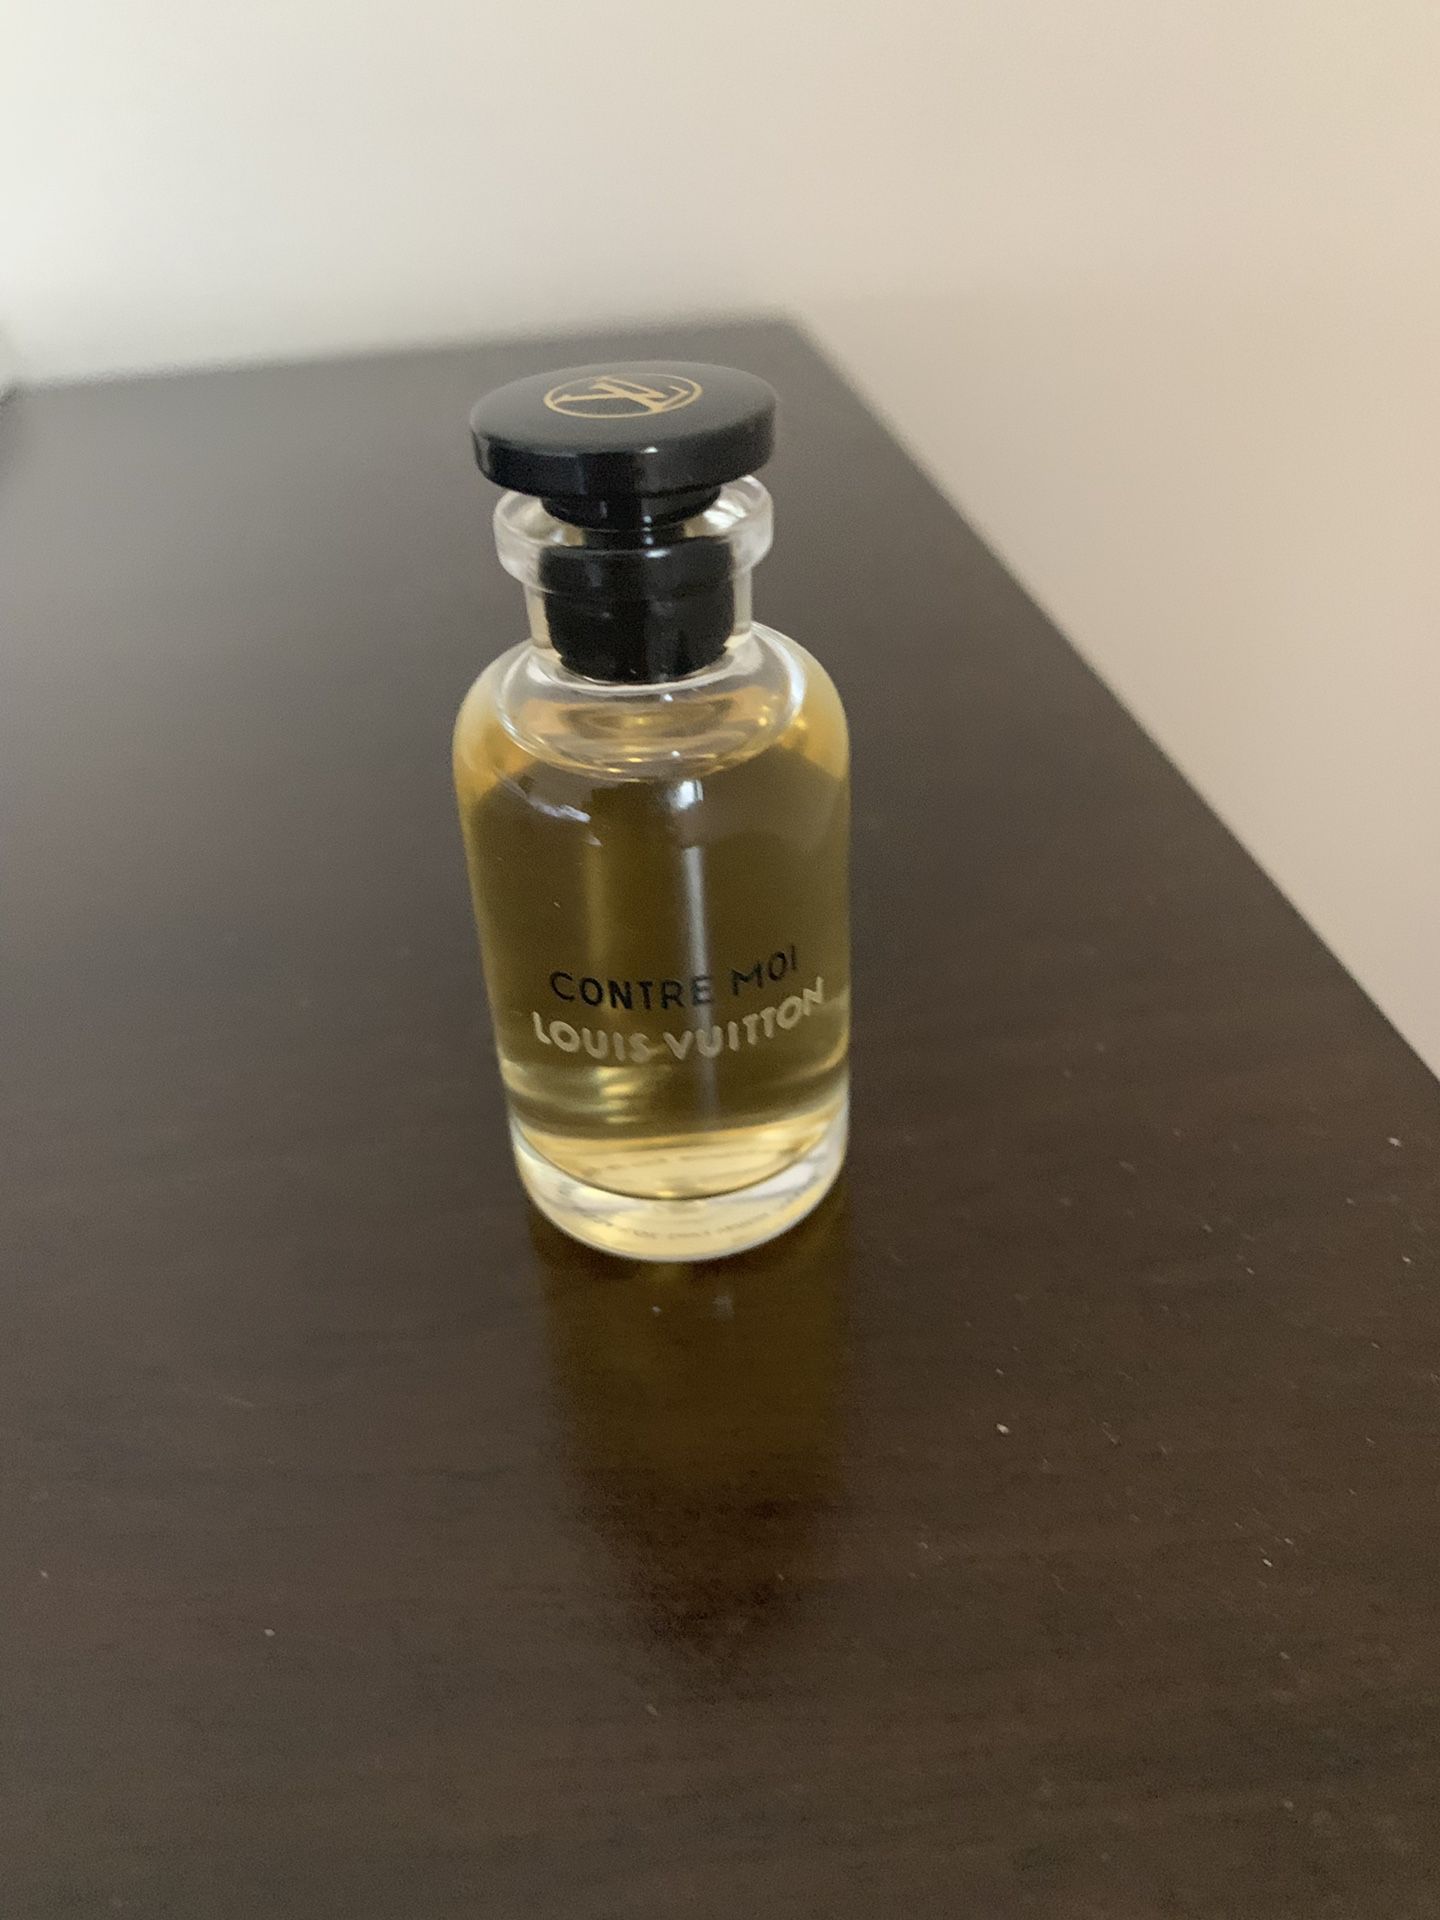 Buy Louis Vuitton - Contre Moi for Women Perfume Oil